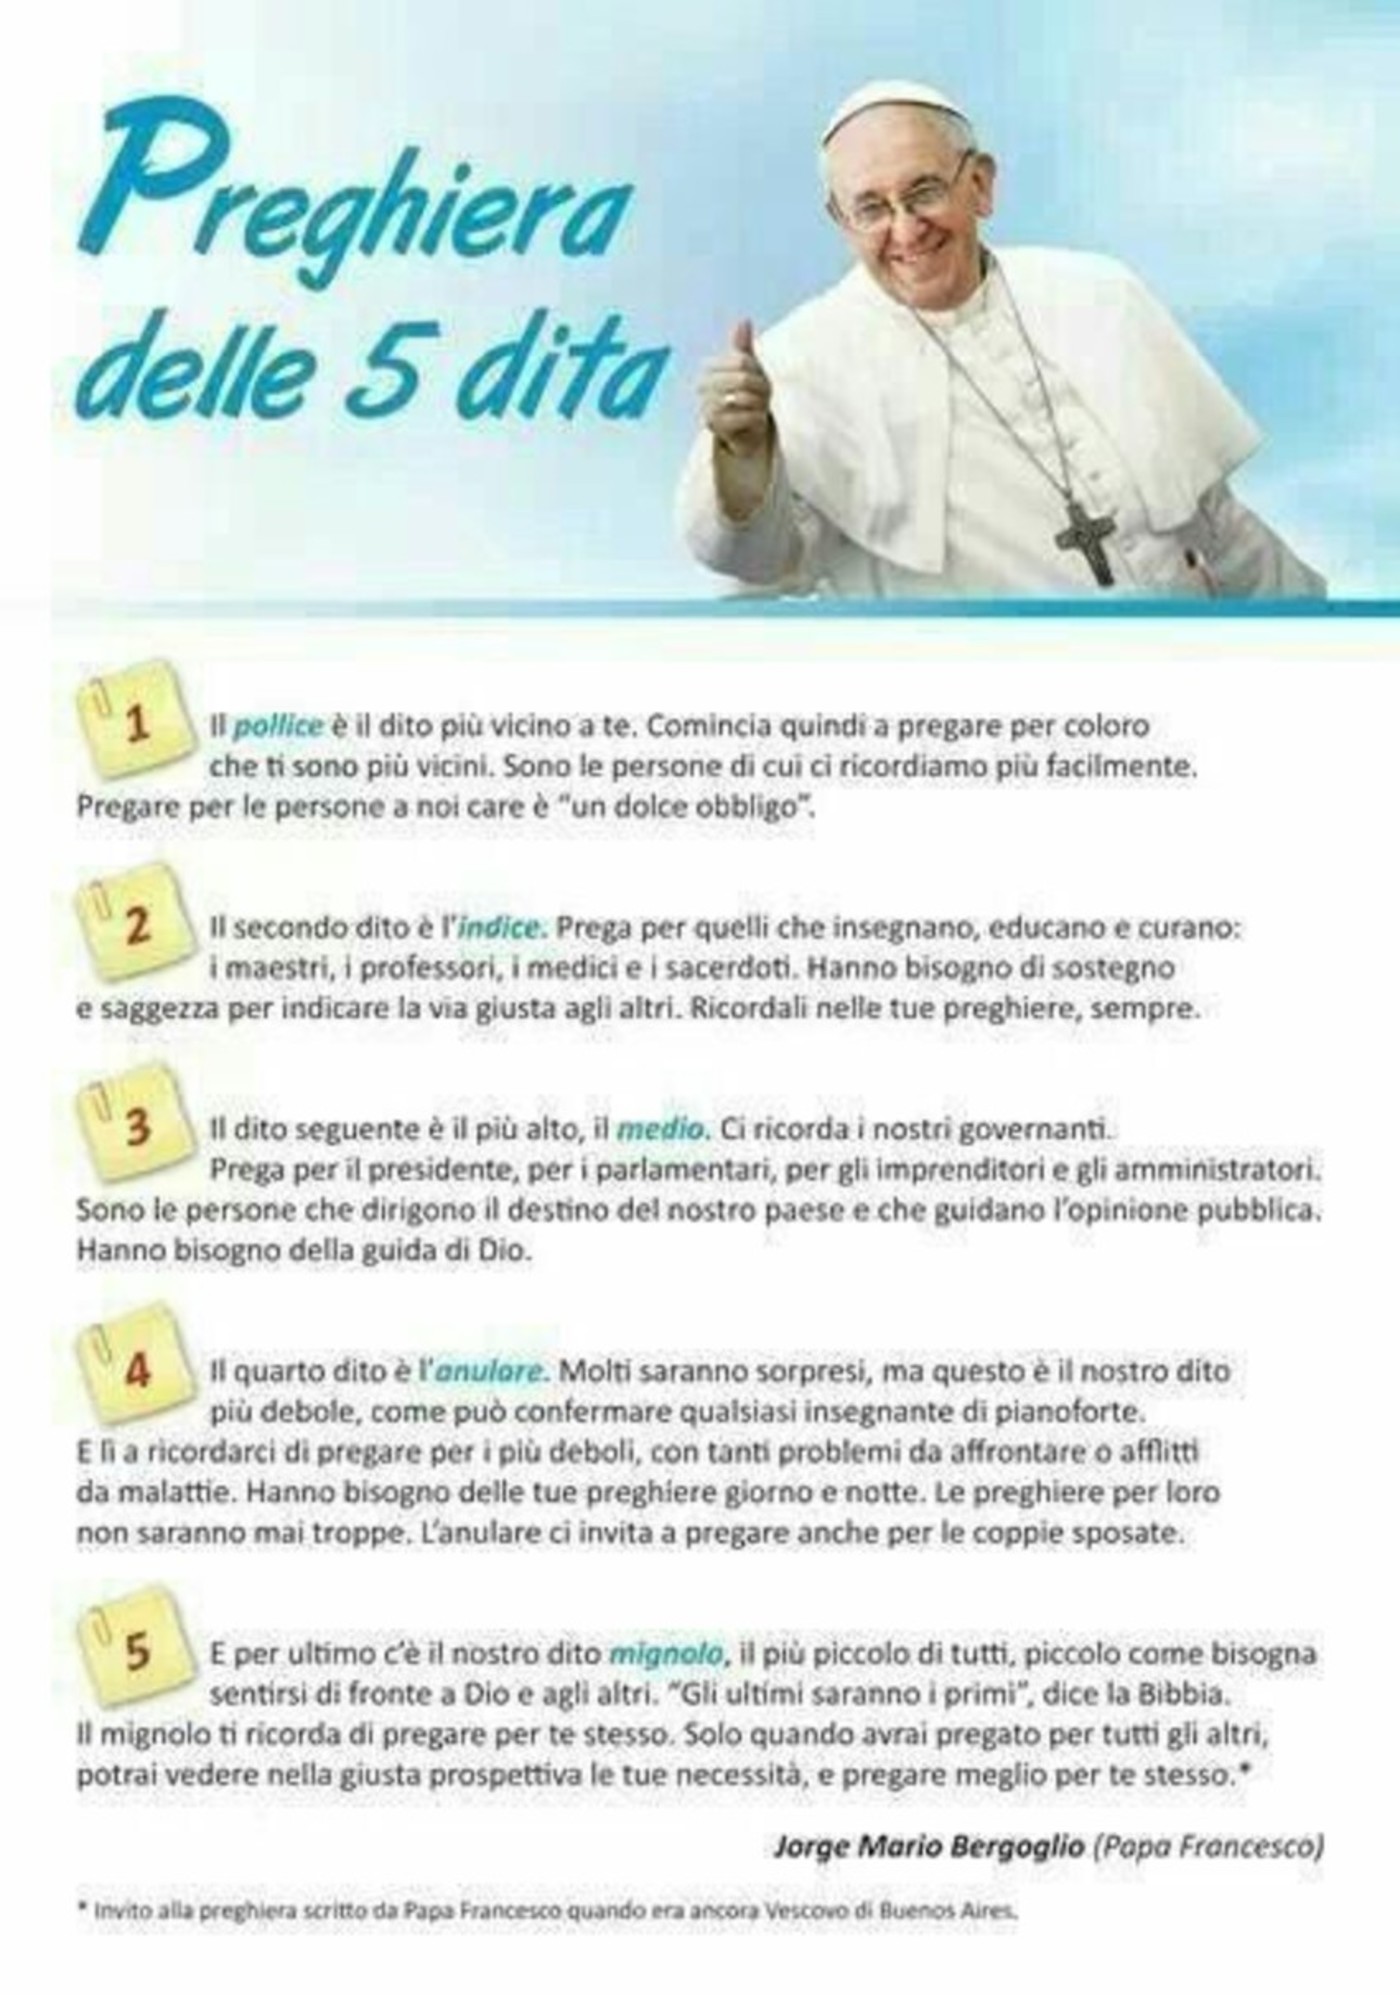 La preghiera delle cinque dita di Papa Francesco